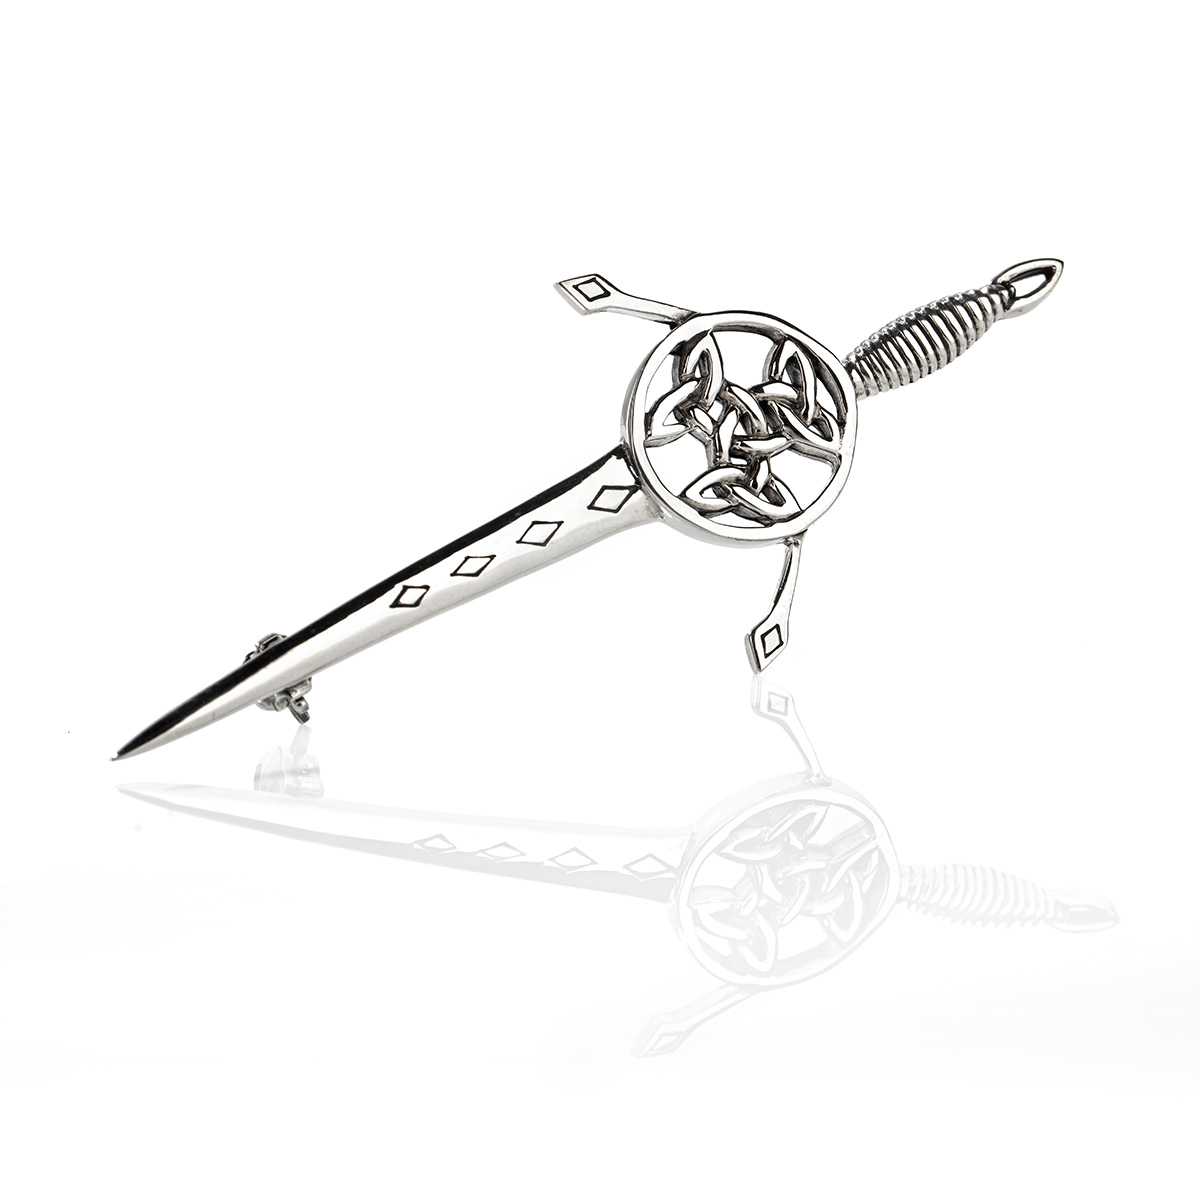 Celtic Sword Kilt Pin aus Sterling Silber - Schwert & keltische Muster